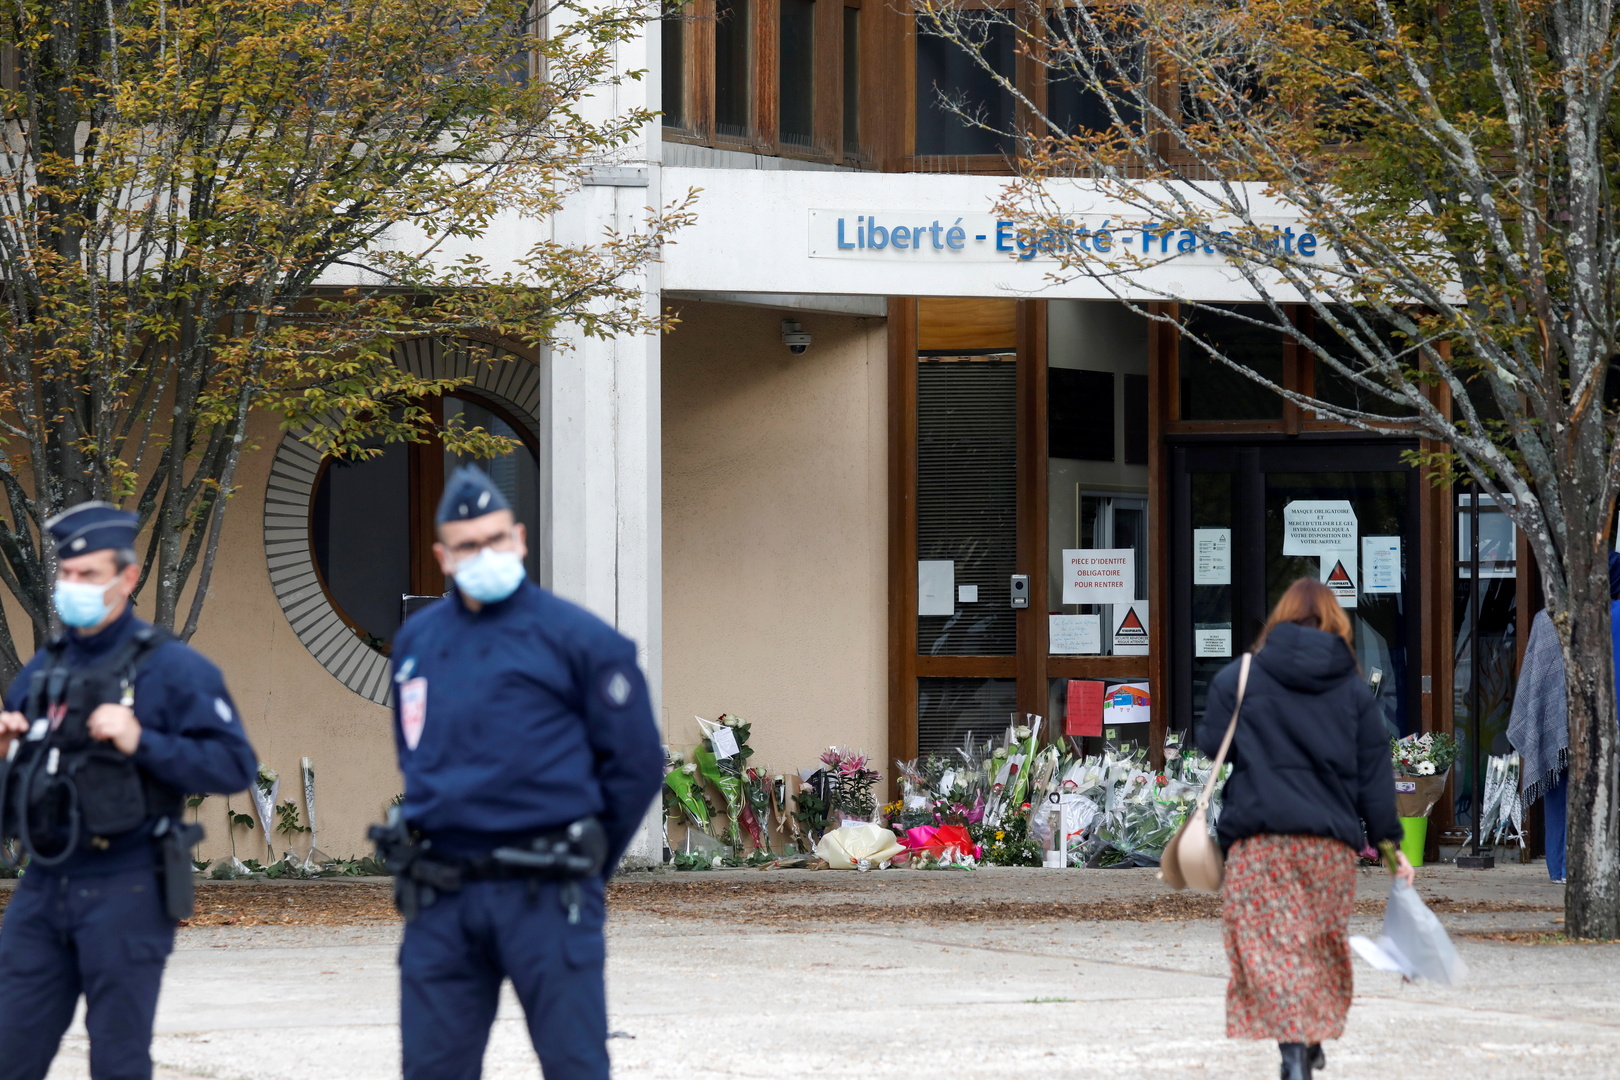 النيابة الفرنسية: قاتل المعلم في باريس حصل على صفة اللاجئ